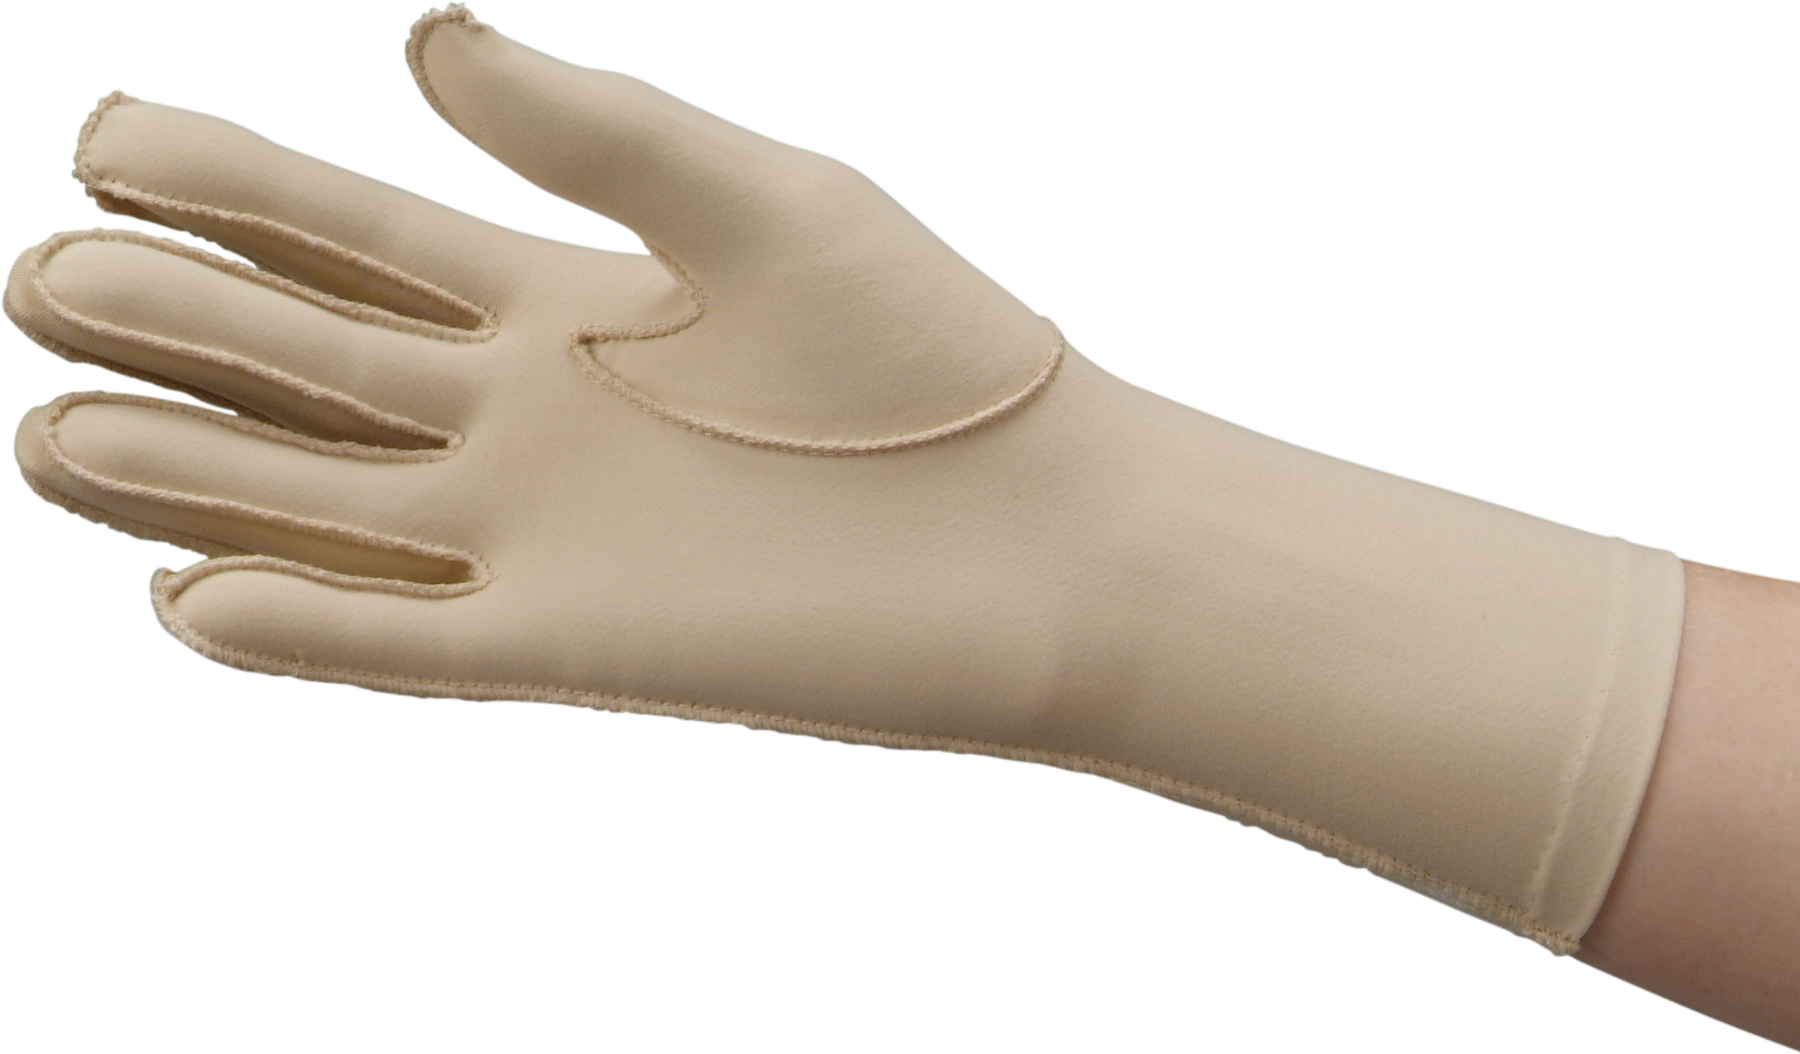 Full finger gloves